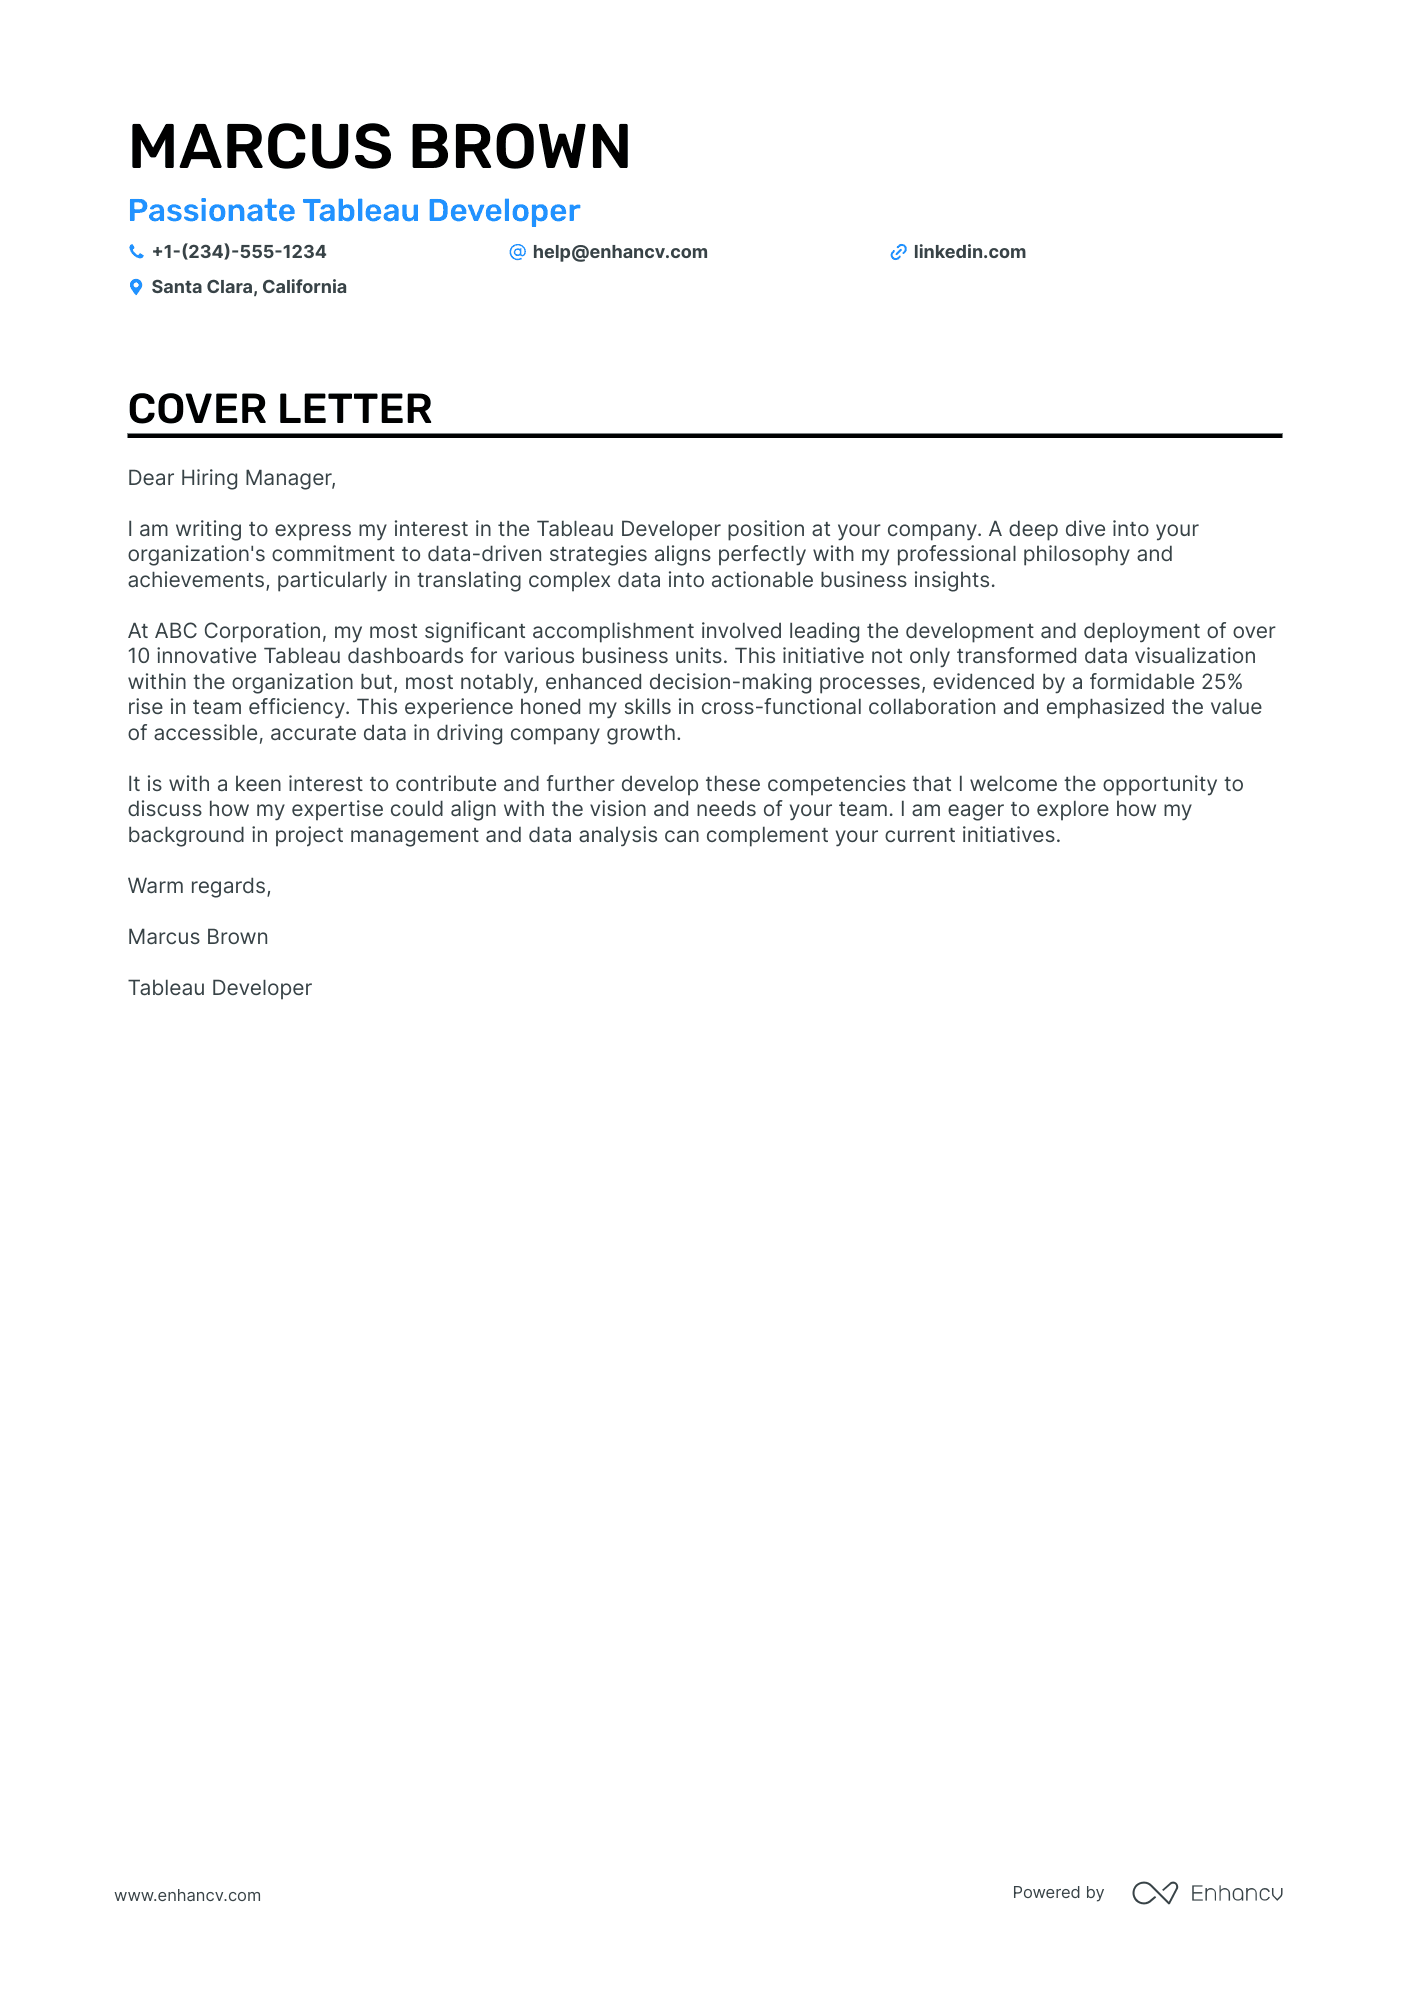 cover letter for angular developer